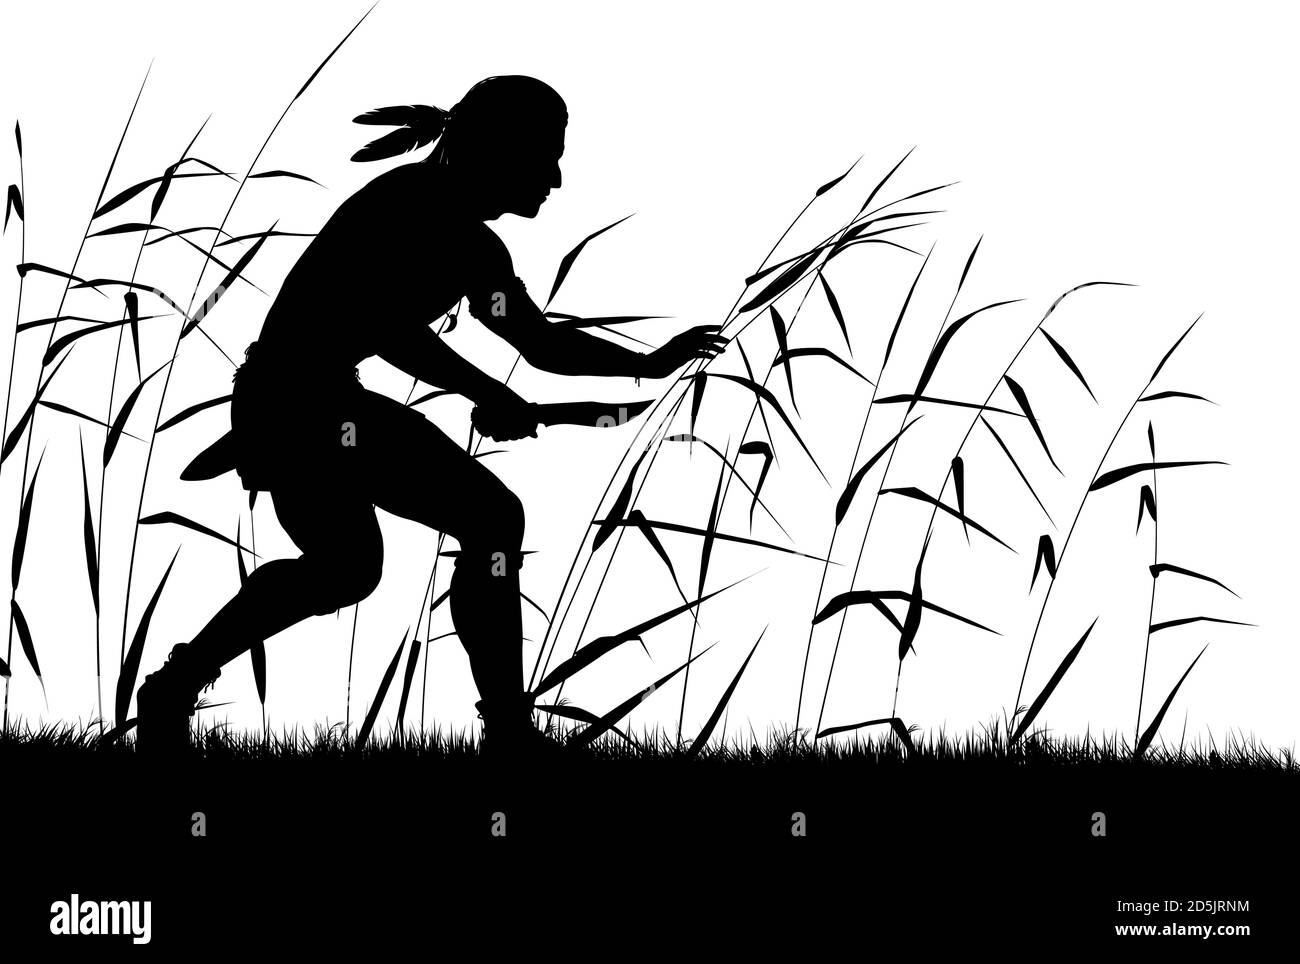 Silueta vectorial editable de un hombre nativo de américa del Norte que se extiende a través de cañas con el hombre, cuchillo y vegetación como objetos separados Ilustración del Vector